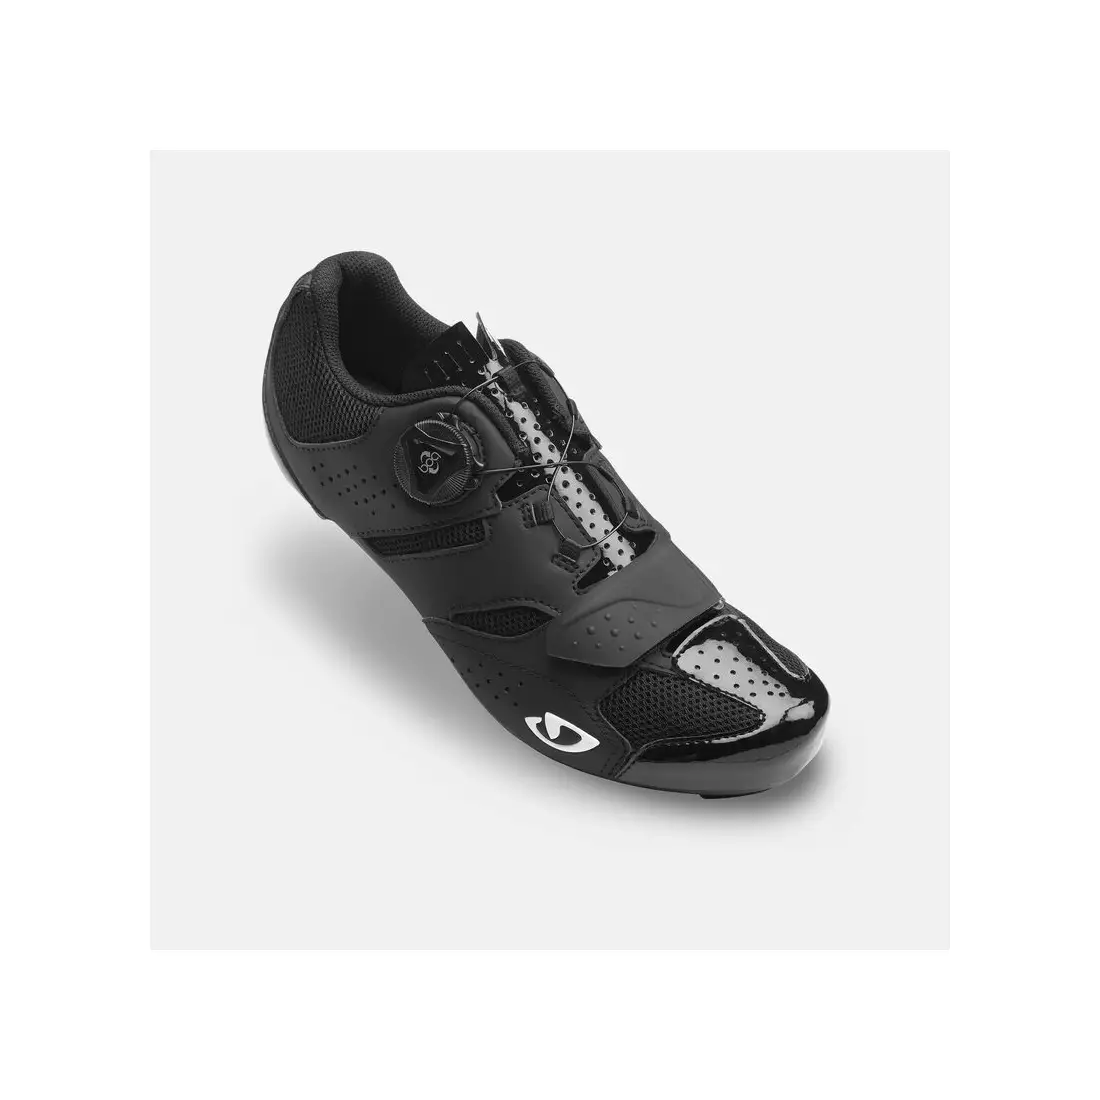 GIRO buty rowerowe damskie savix II w black GR-7126203